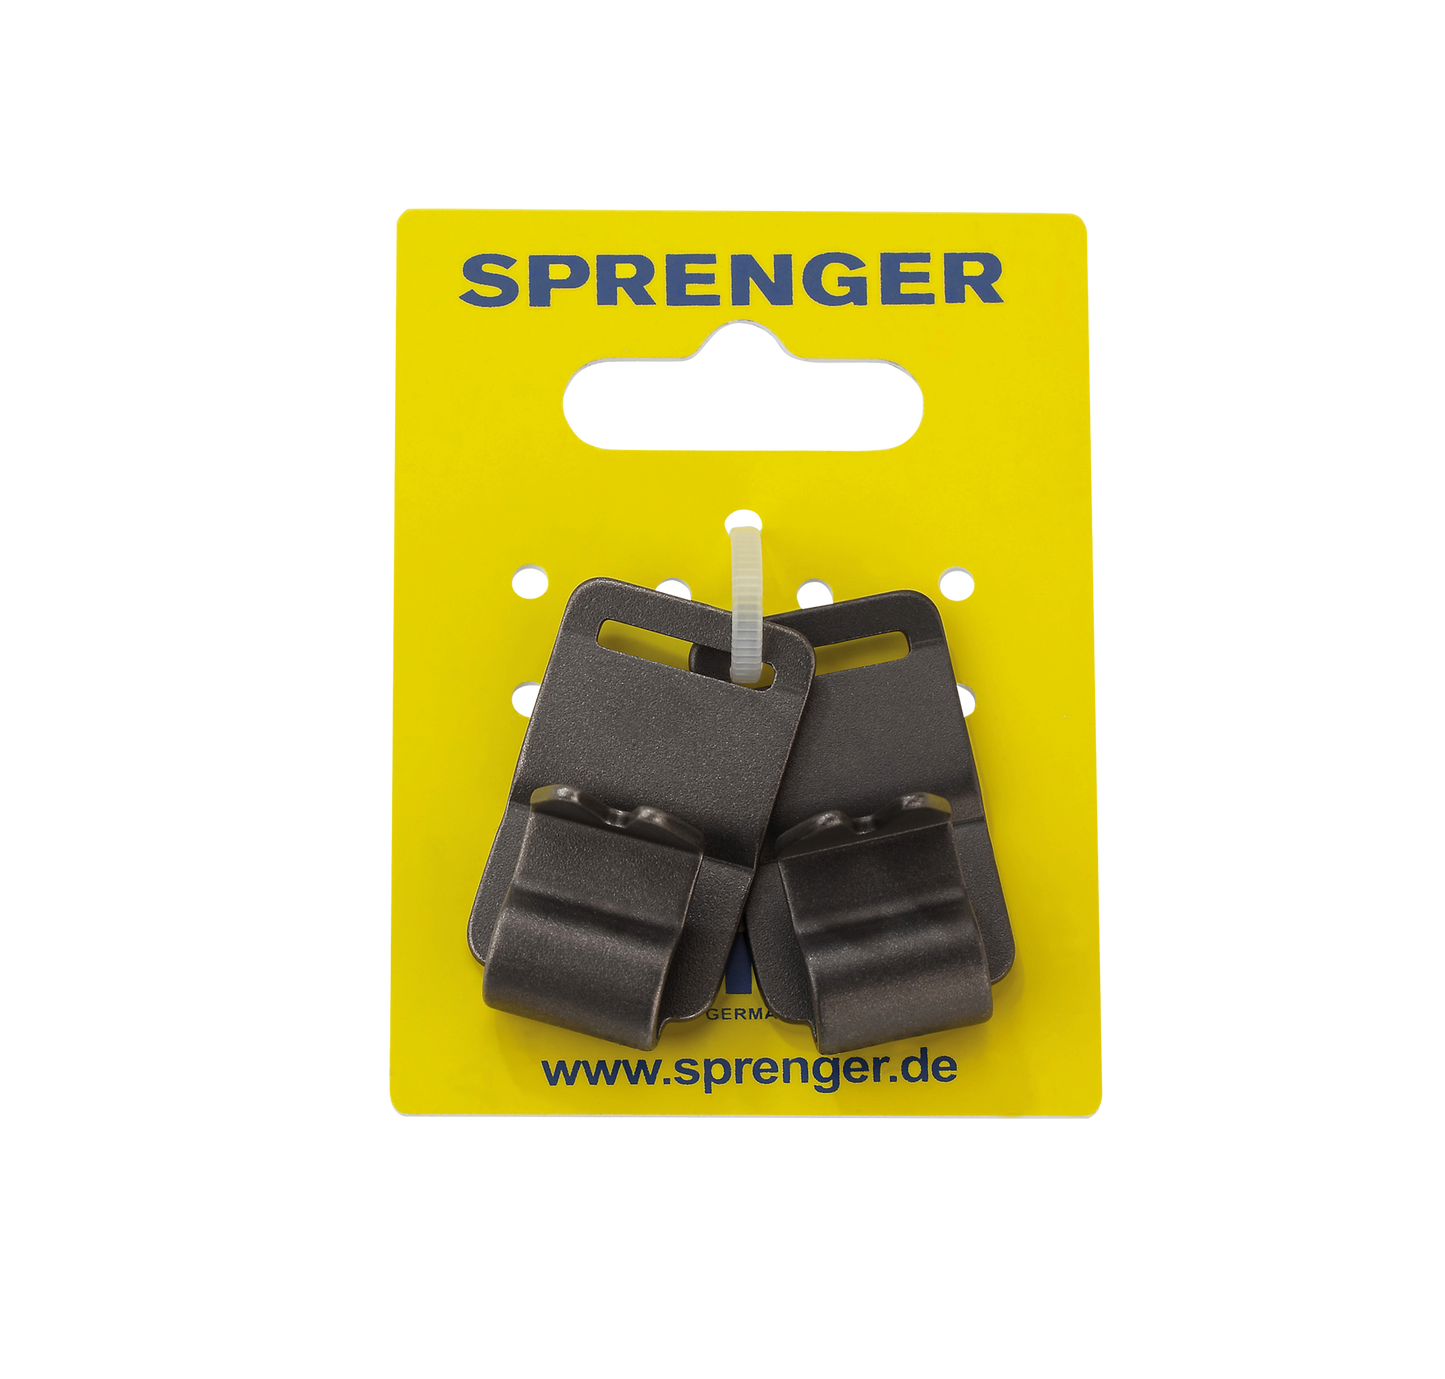 Sprenger Necktech Sport Extra Links - Black Stainless Steel II